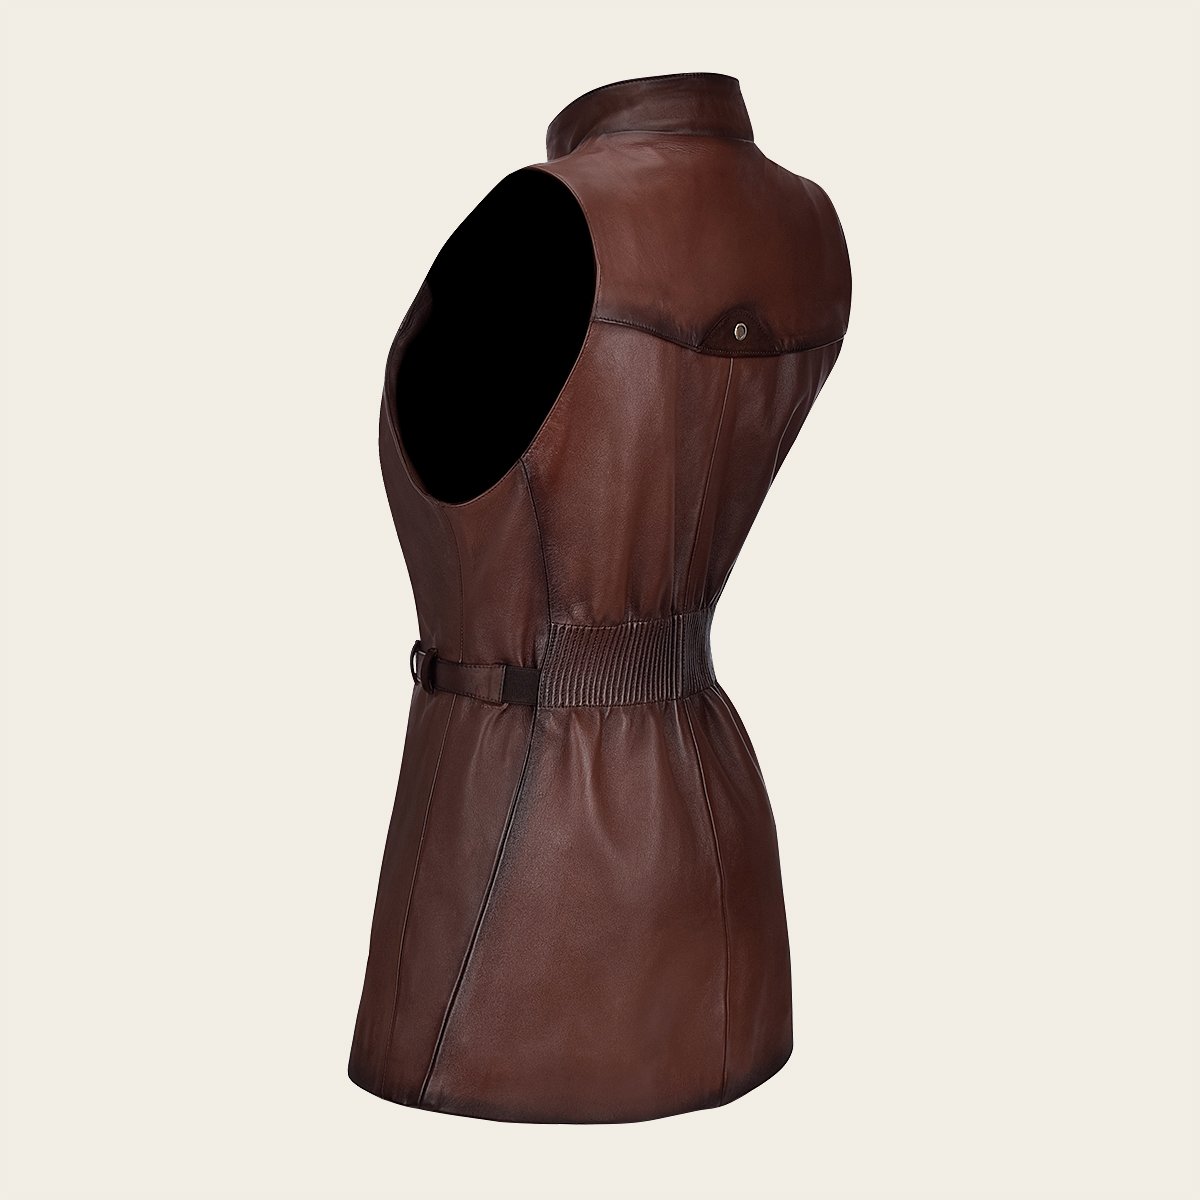 Chaleco Cuadra de cuero marrón bordado a cuadros para mujer - M134BOB -  Cuadra Shop